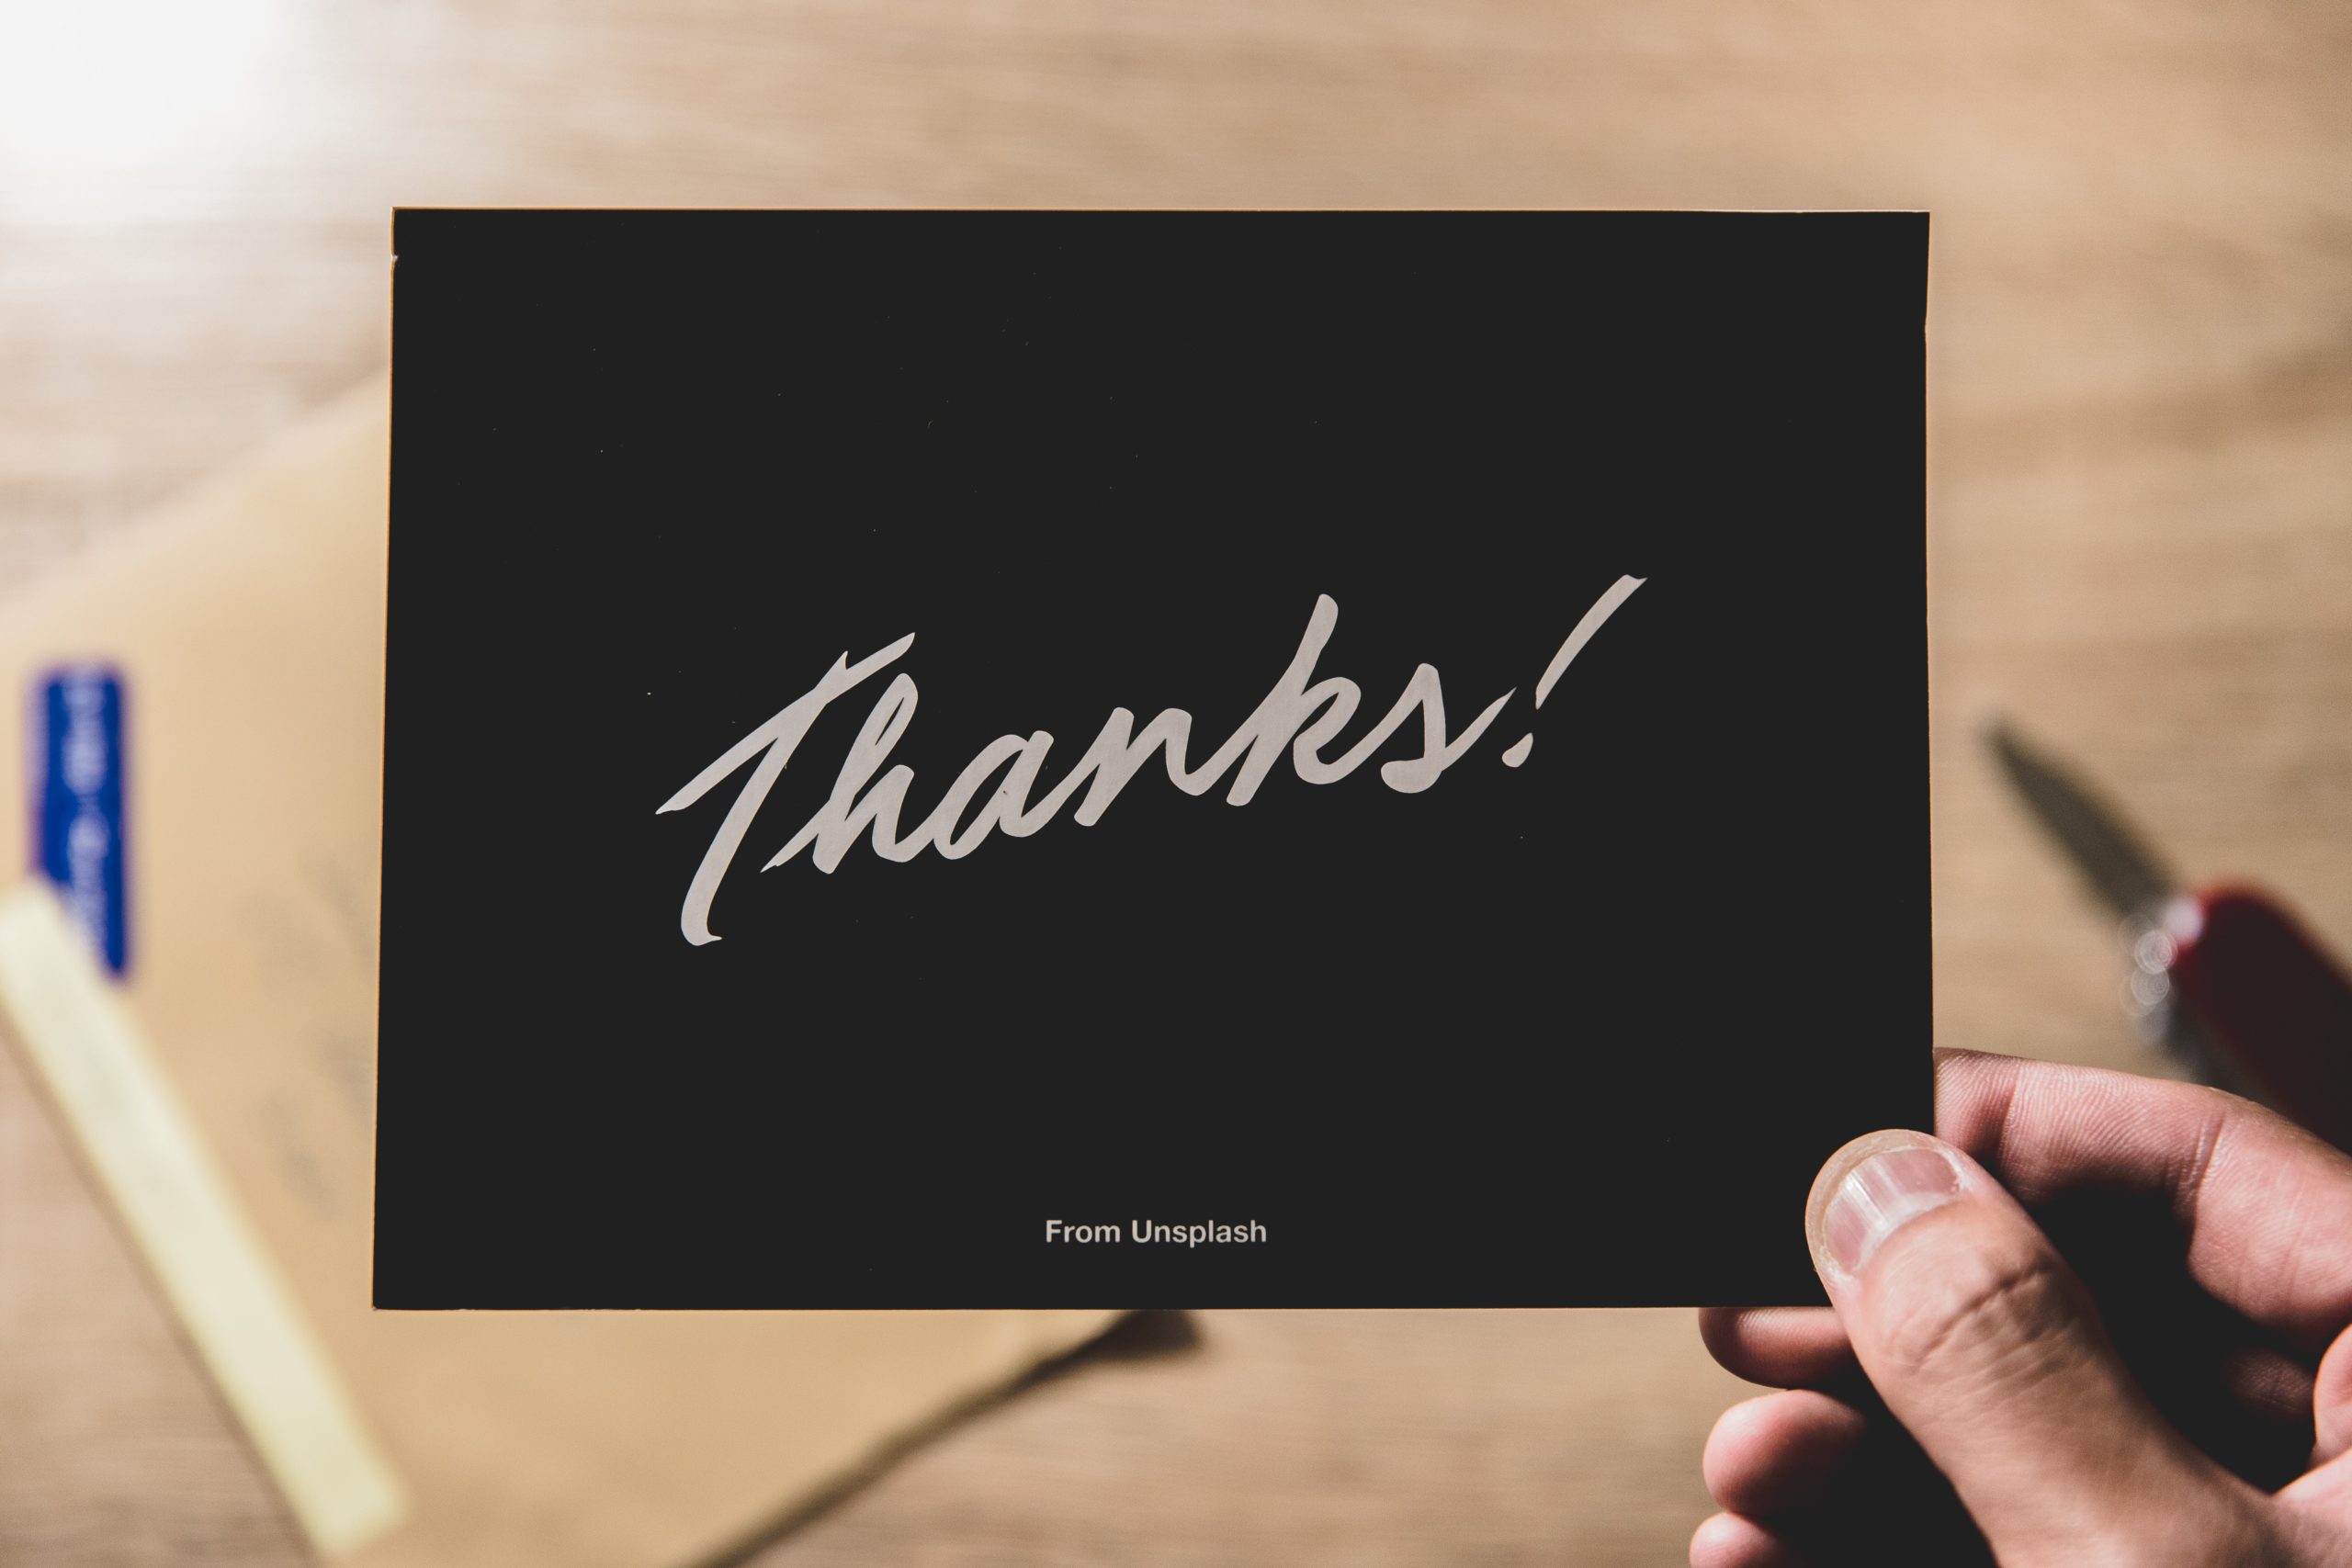 驚くべき 感謝 の効果 感謝 を暮らしに取り入れよう おおるりブログ